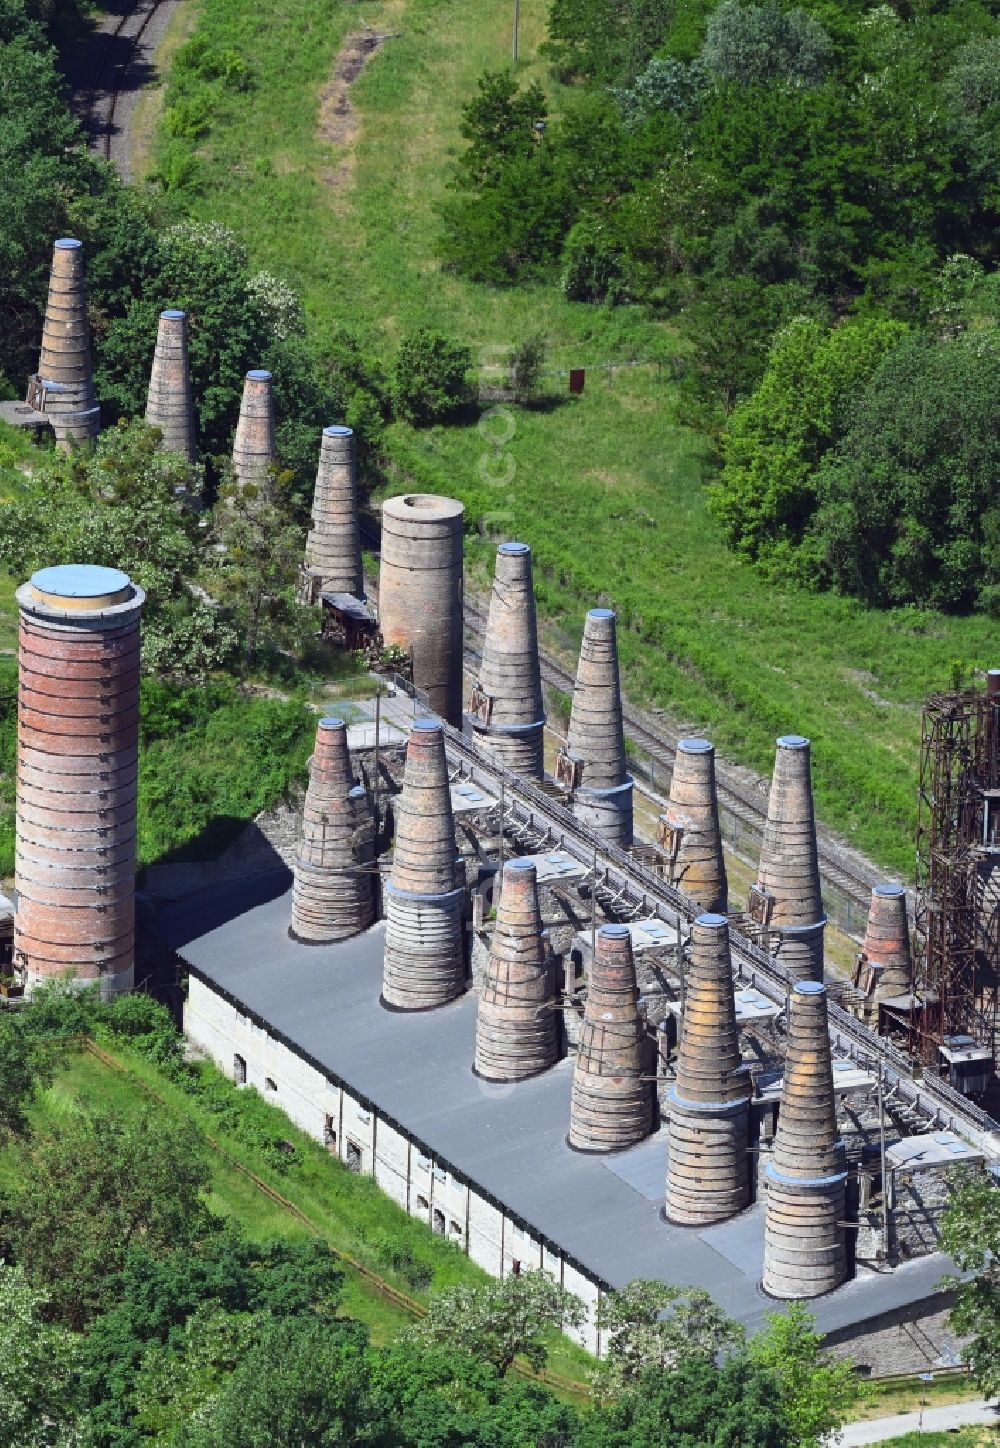 Aerial image Rüdersdorf - Building of the Shaft furnace battery in the Museumspark Ruedersdorf owned by the Ruedersdorfer Kultur GmbH in Ruedersdorf in the state Brandenburg